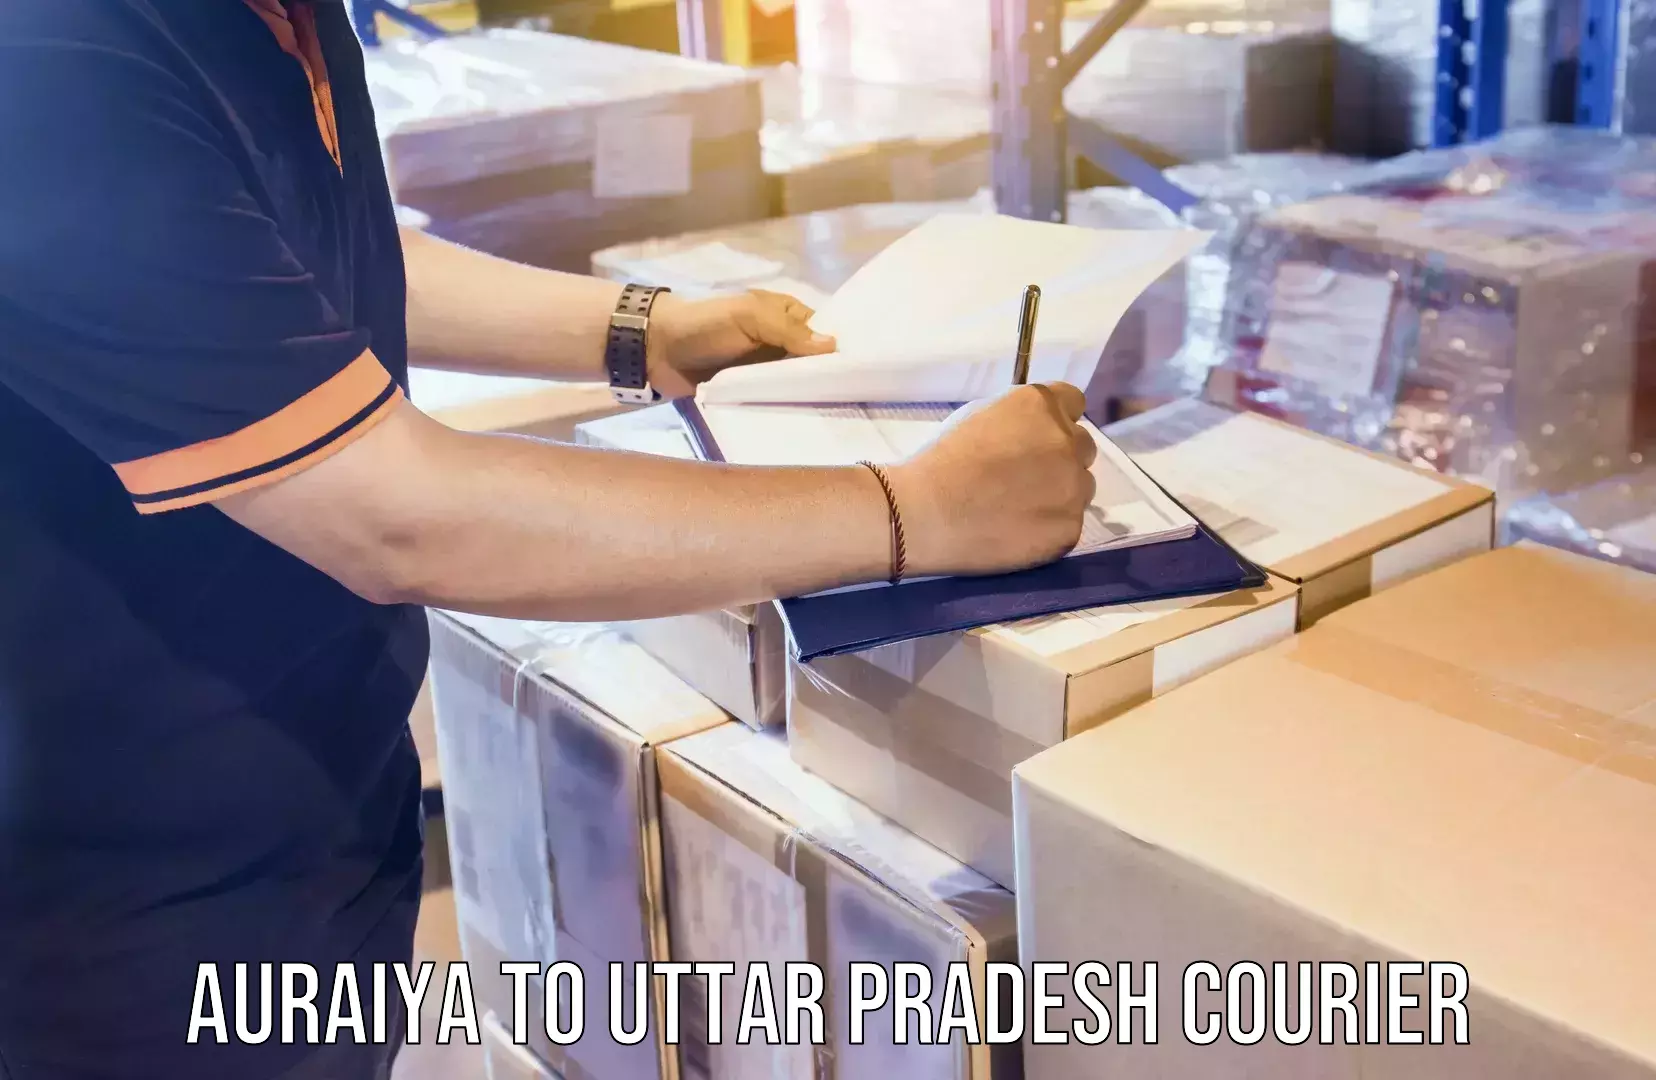 Express delivery network Auraiya to Uttar Pradesh